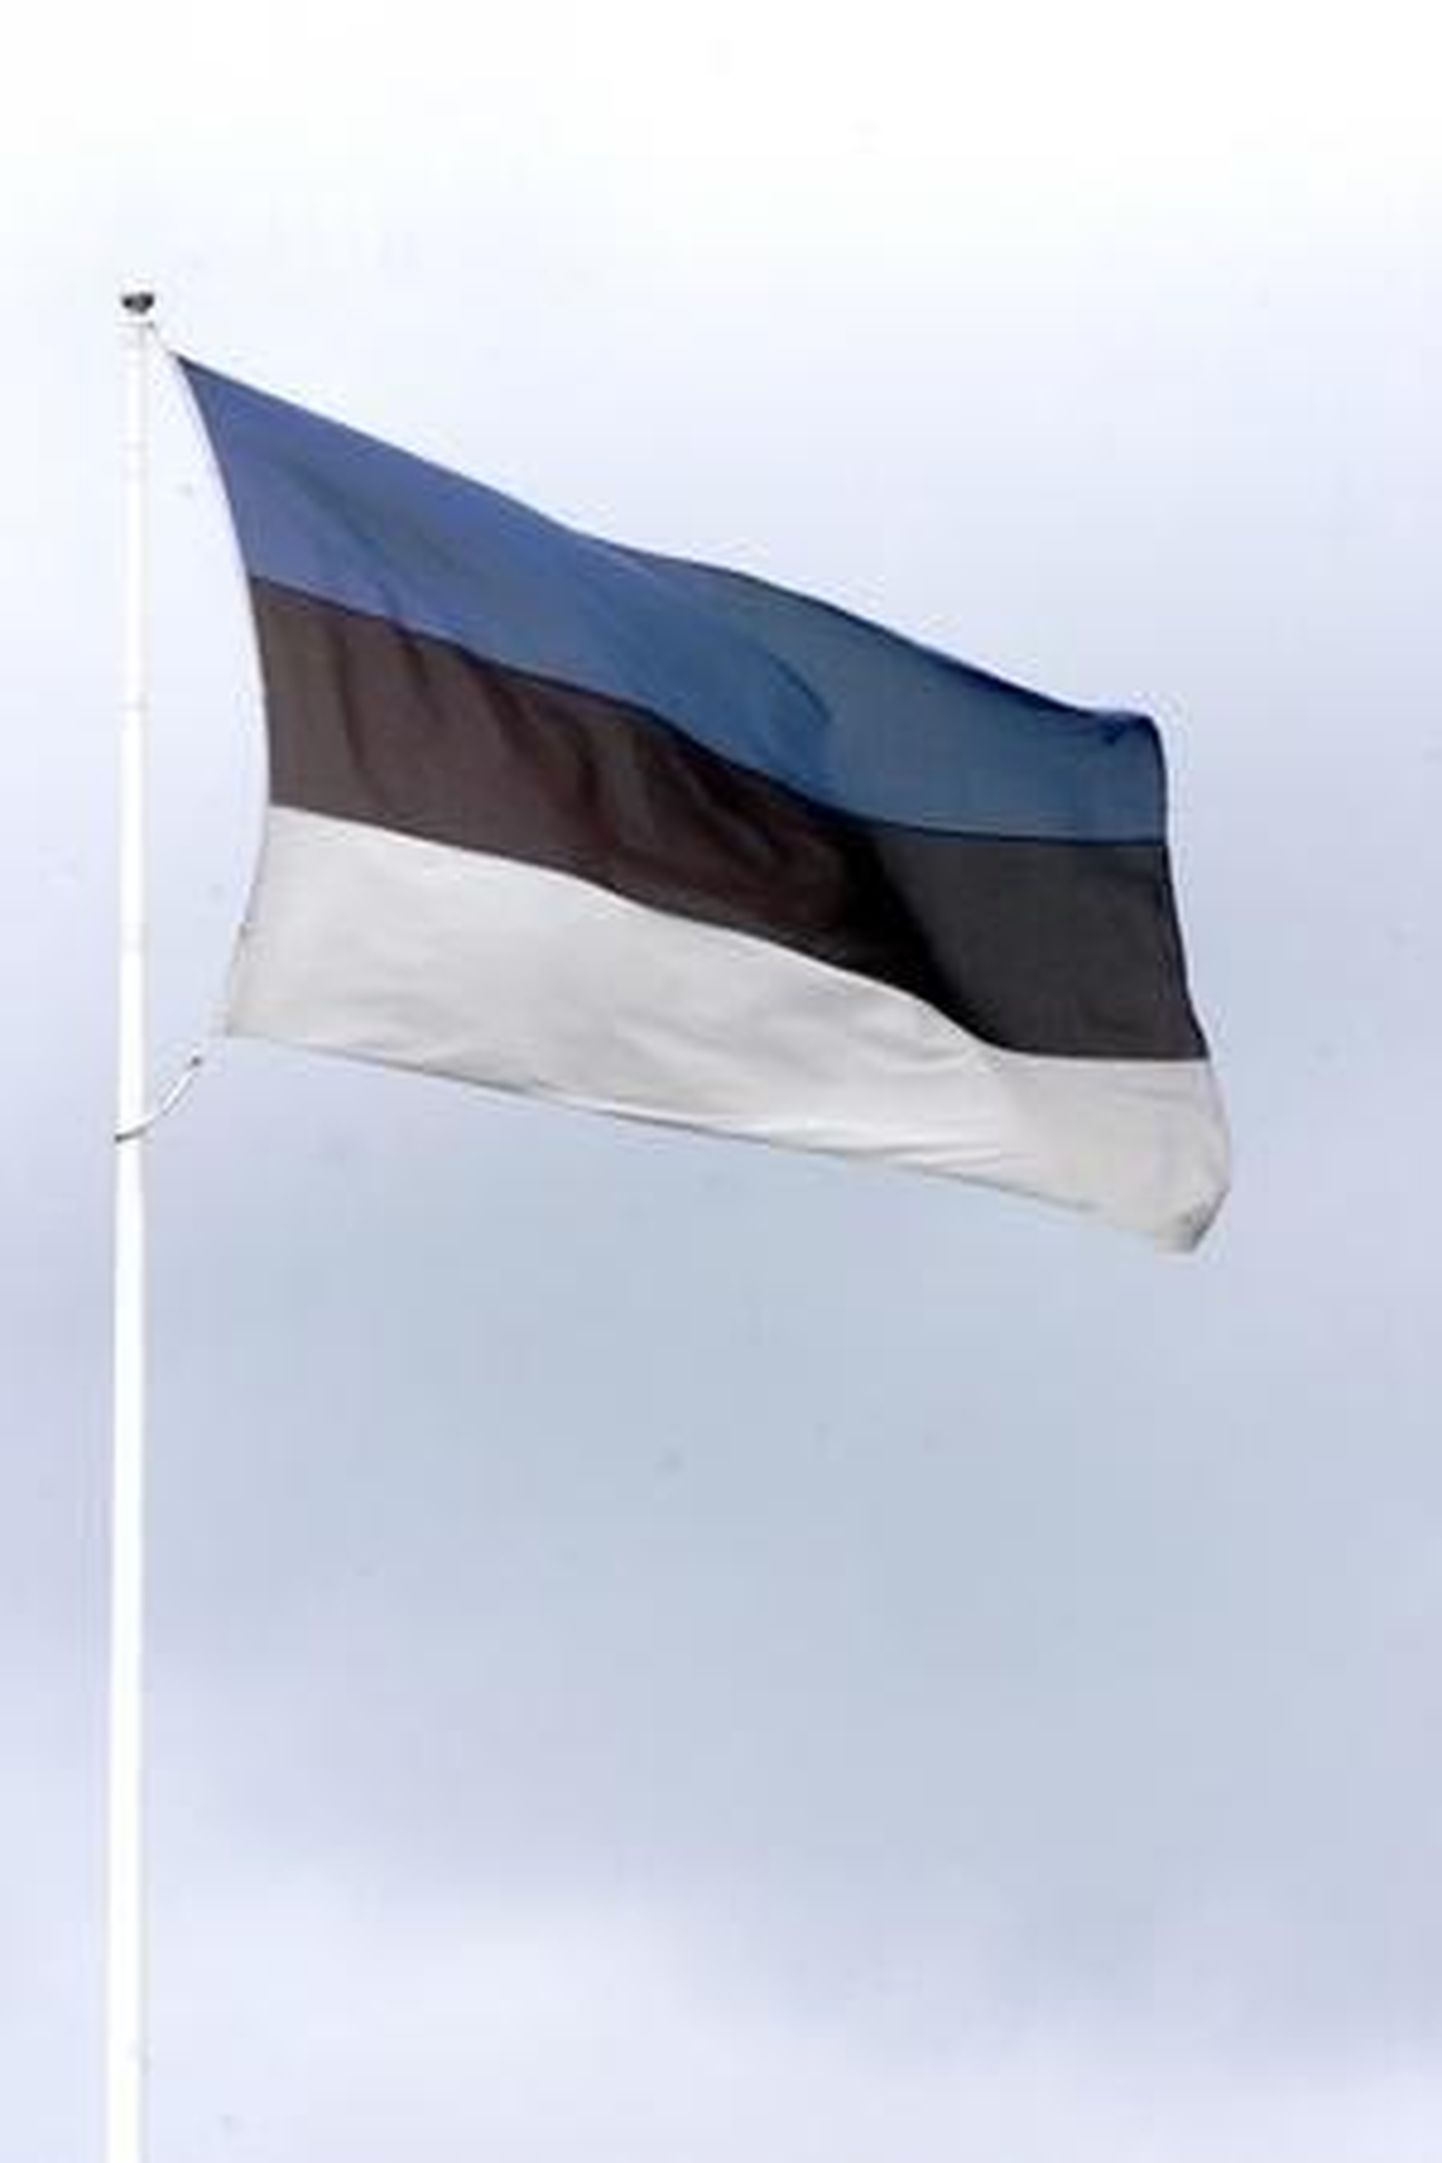 Eesti Vabariigi väljakuulutamise monumendi juures heisatakse pidulikult riigilipp.